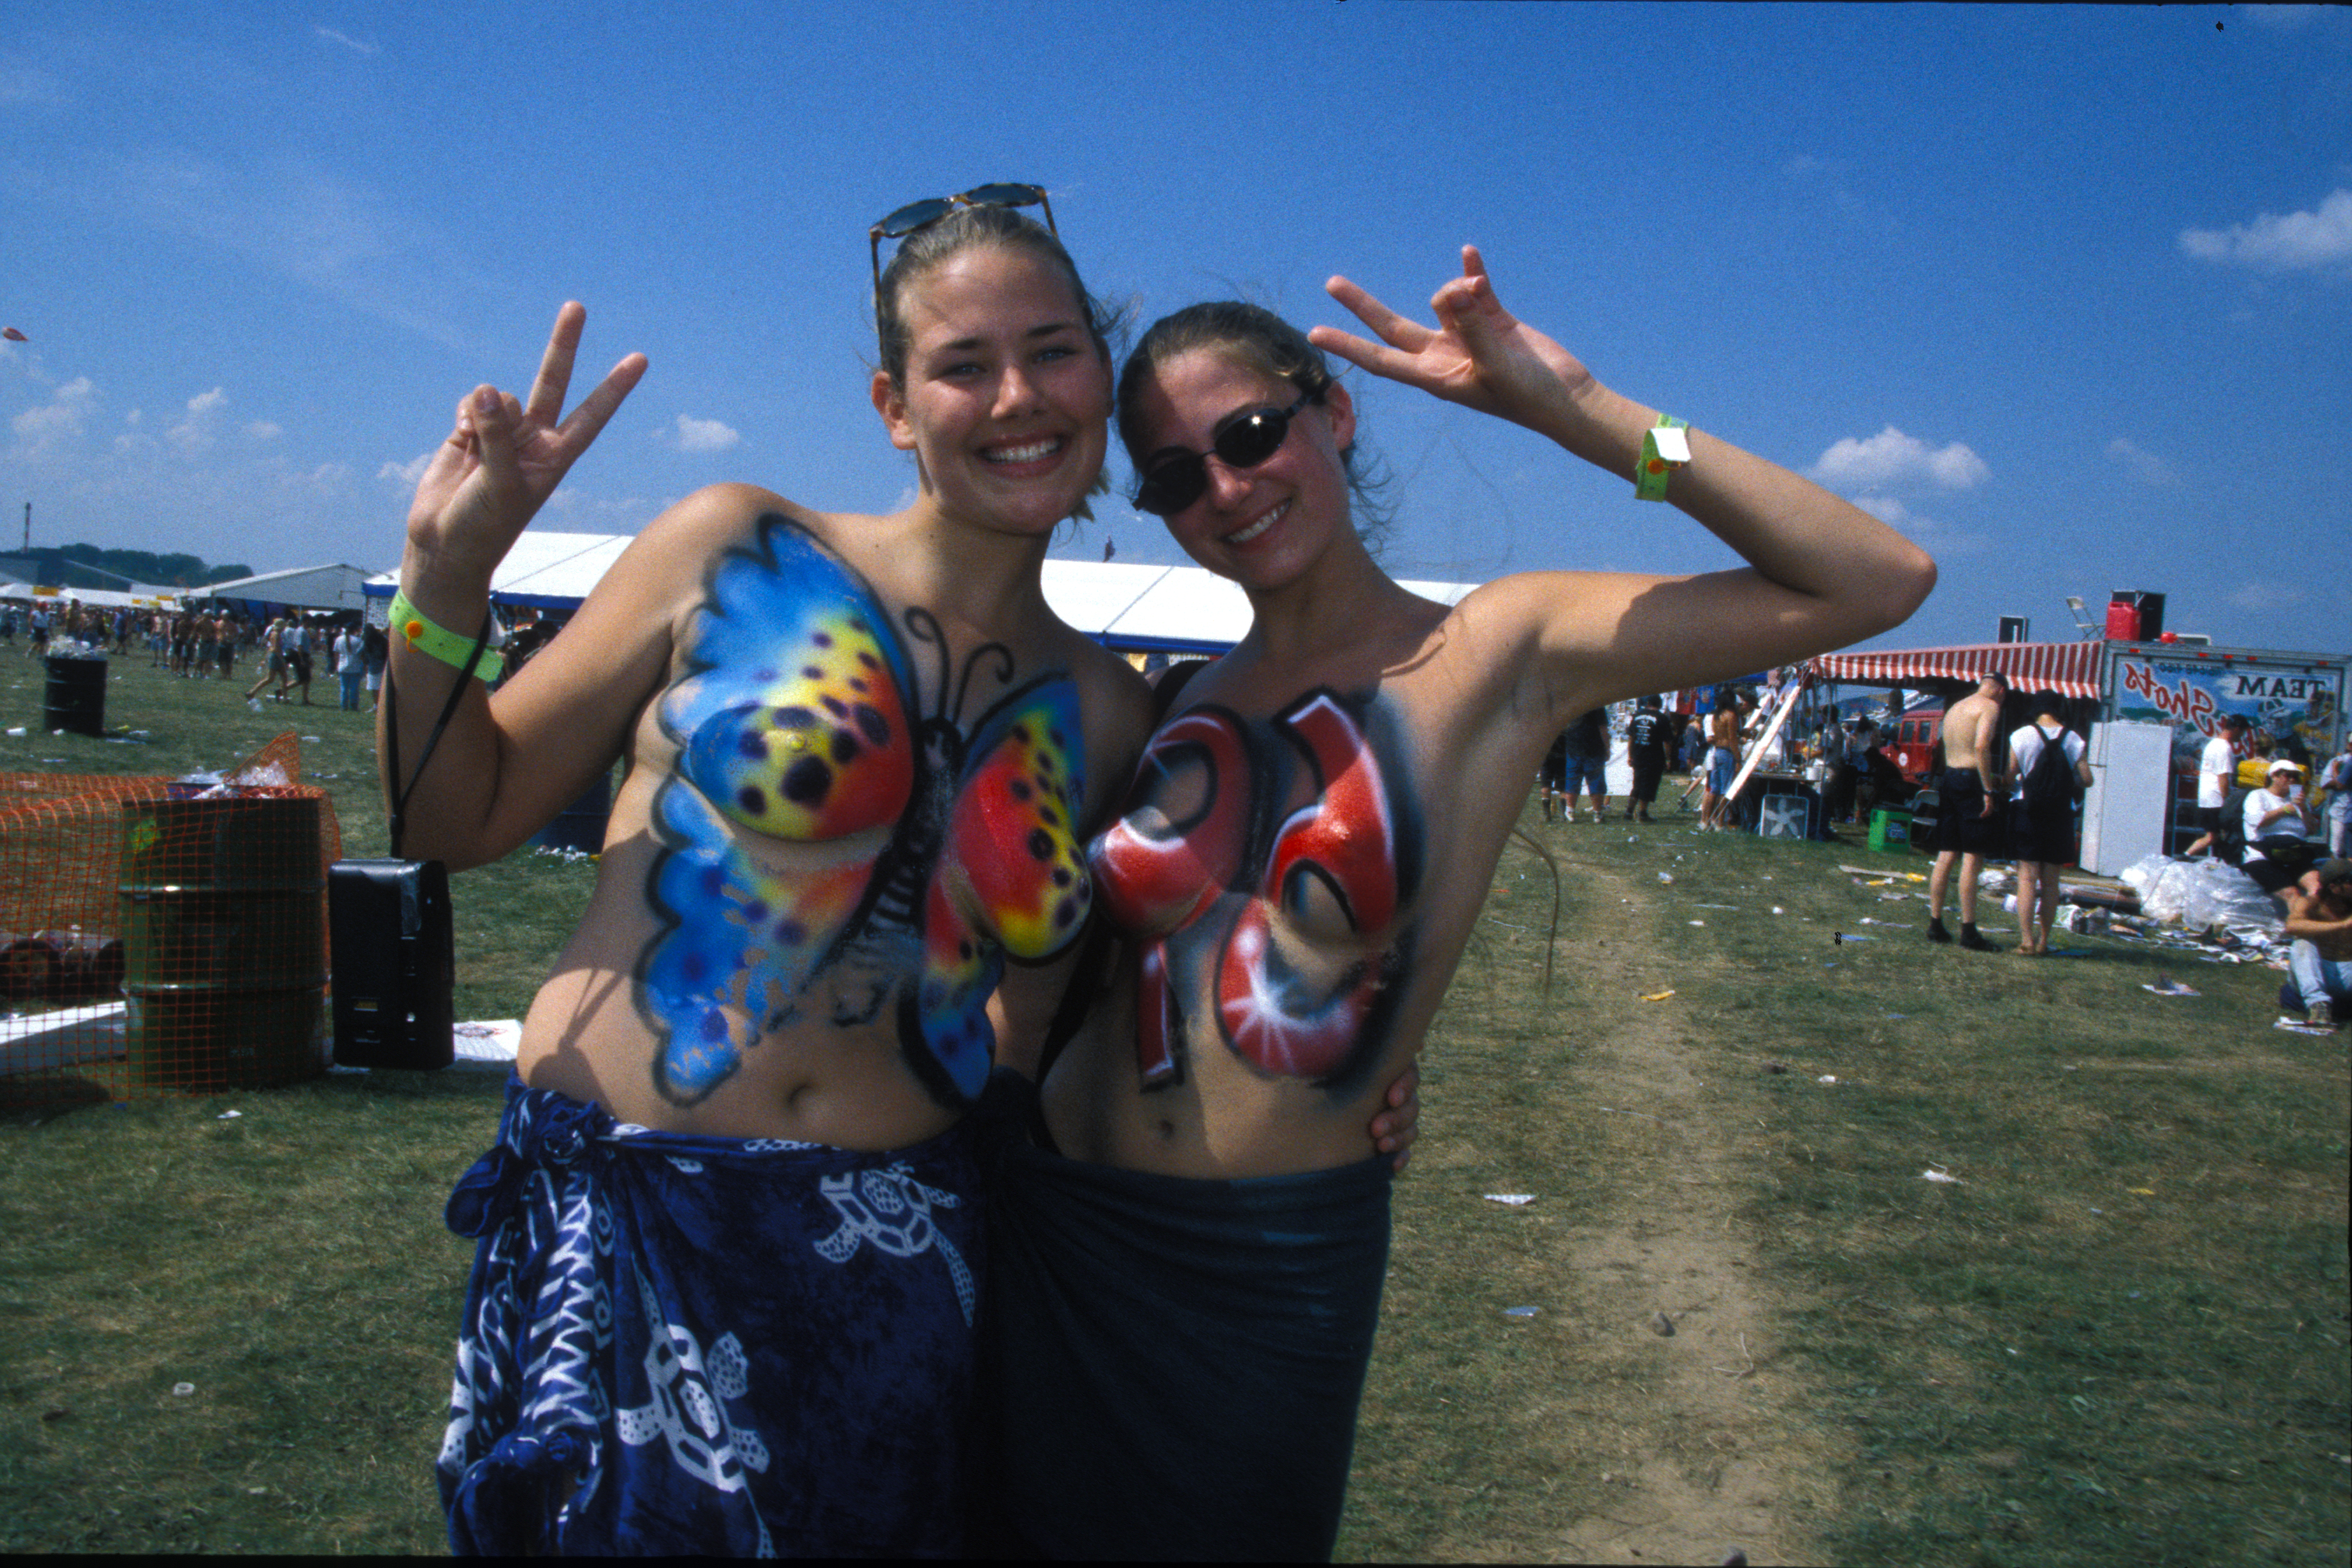 Durante los primeros días los desnudos dominaron el lugar. Parecía que el viejo espíritu de Woodstock, del original, se hacía presente. (Photo by Getty Images/John Atashian)